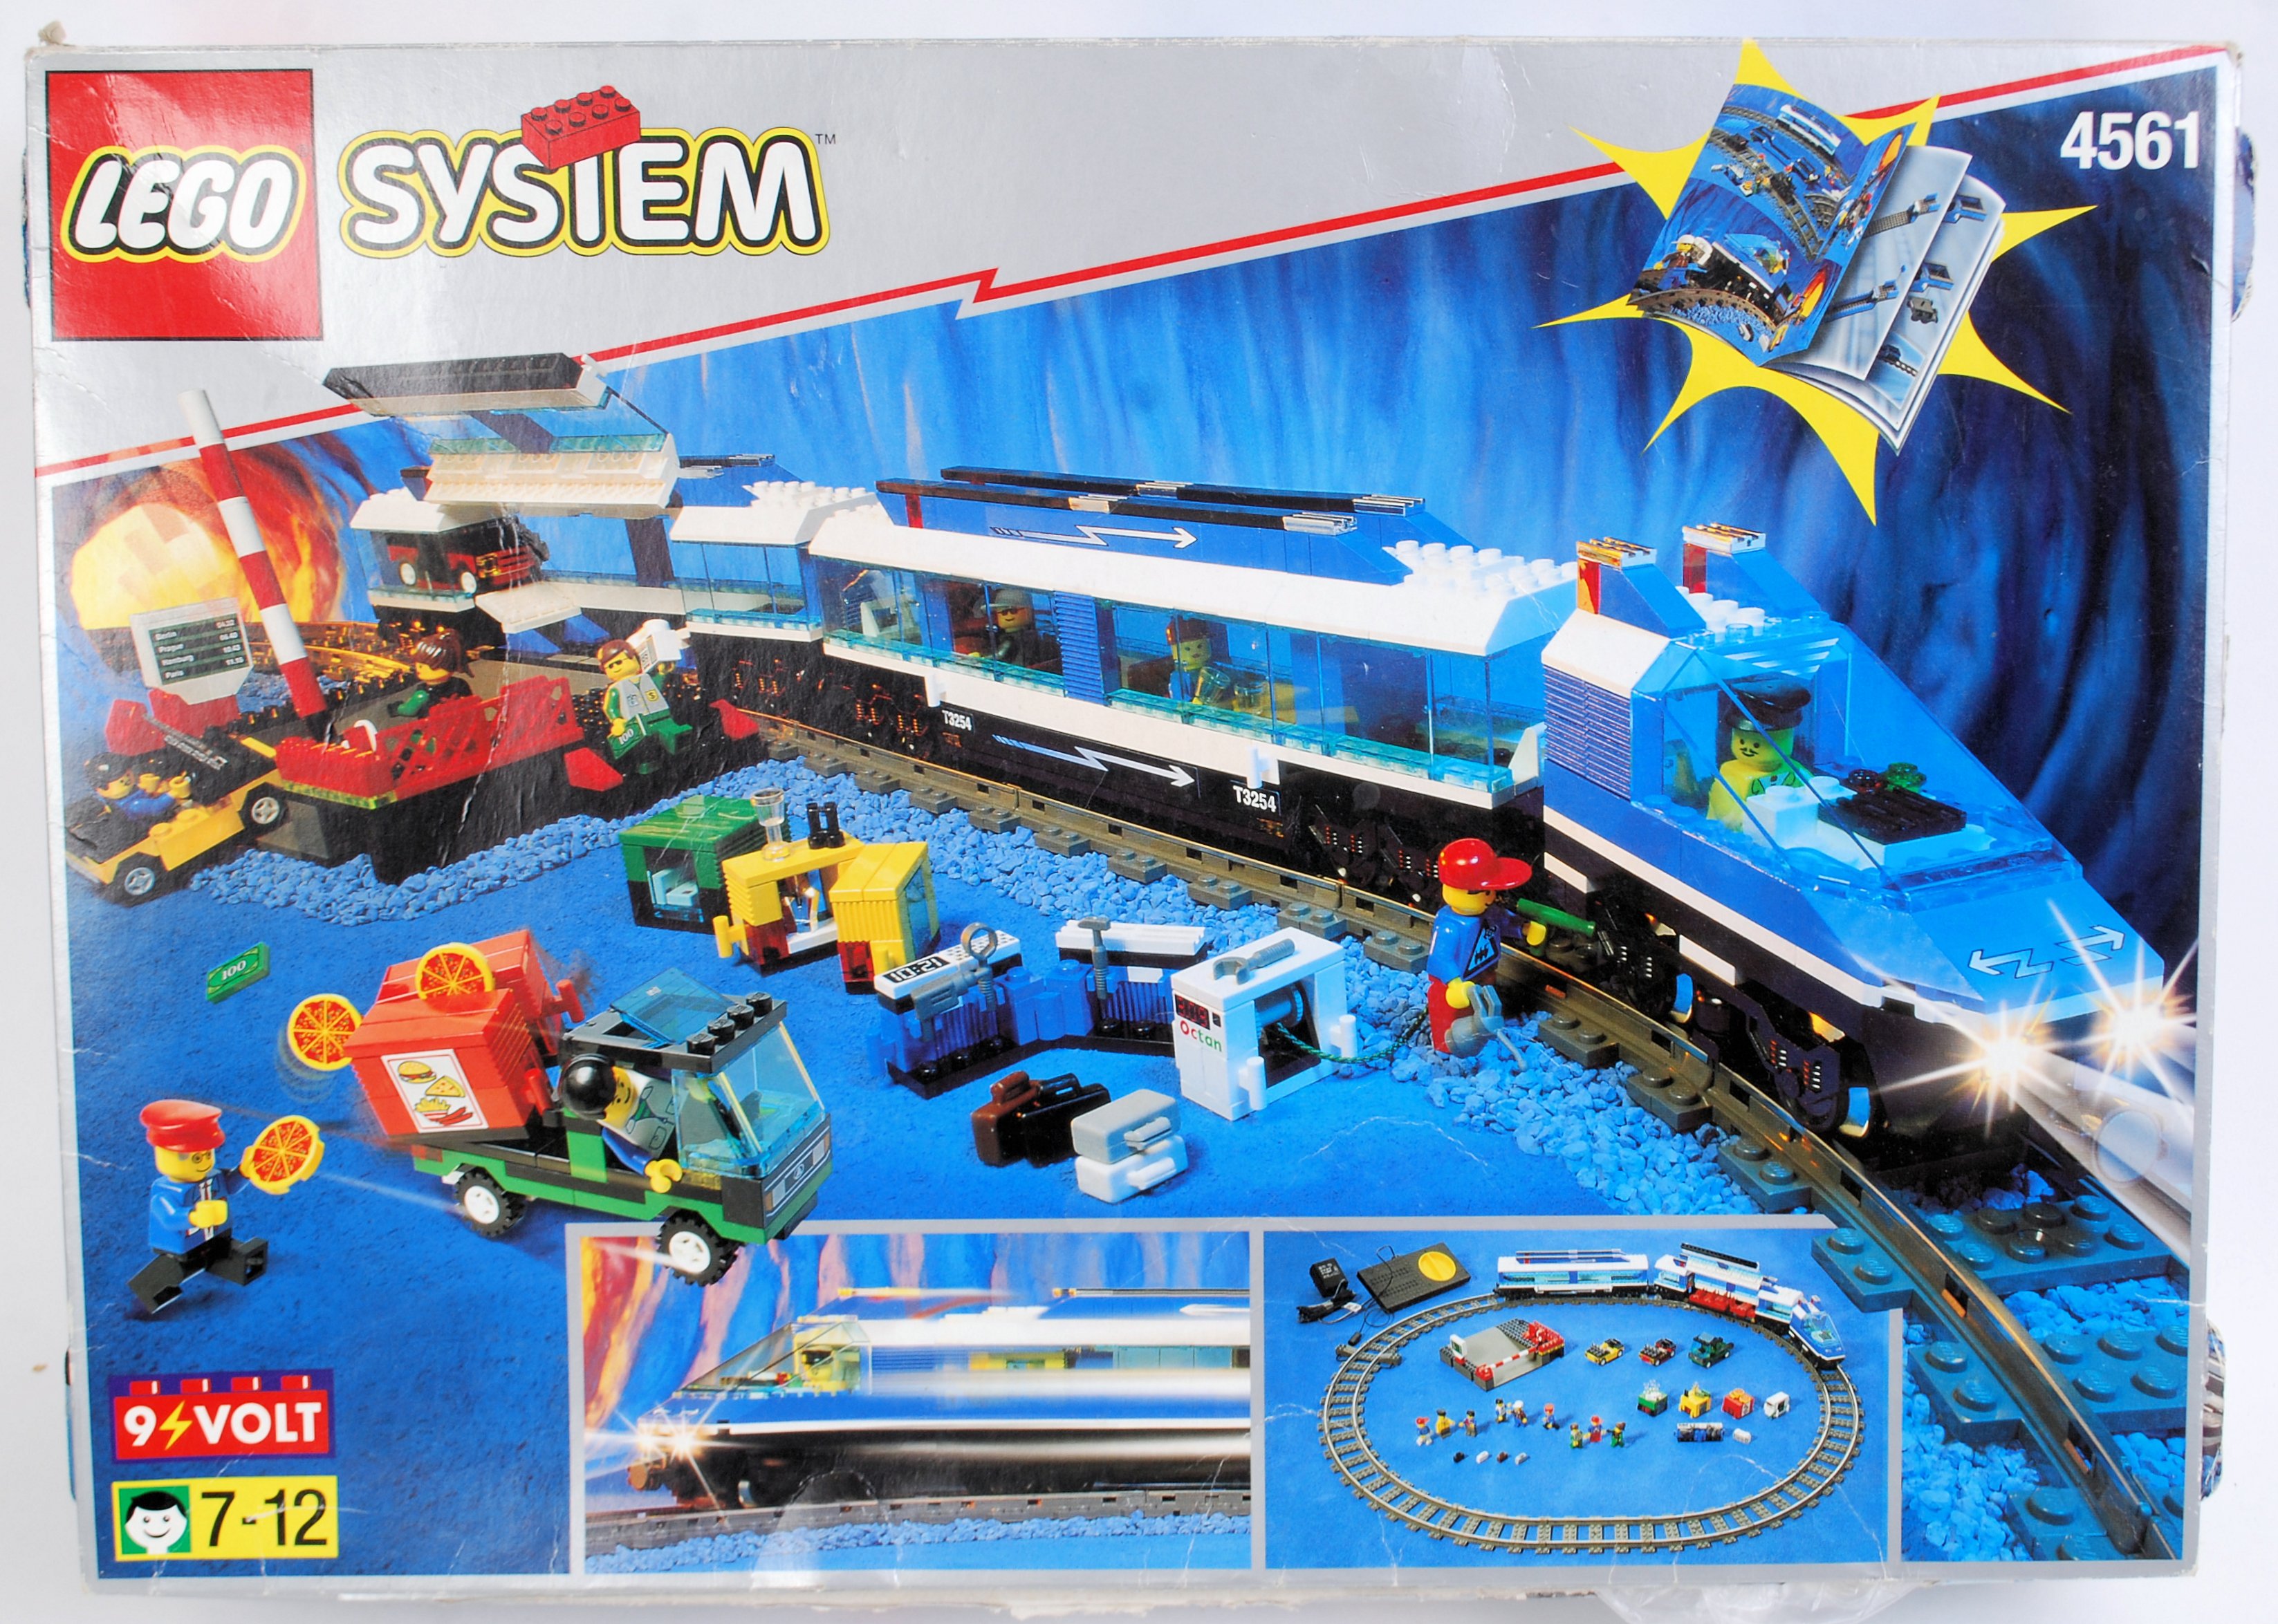 LEGO SYSTEM TRAIN: An original vintage Lego System 4561 Railway Express Train.